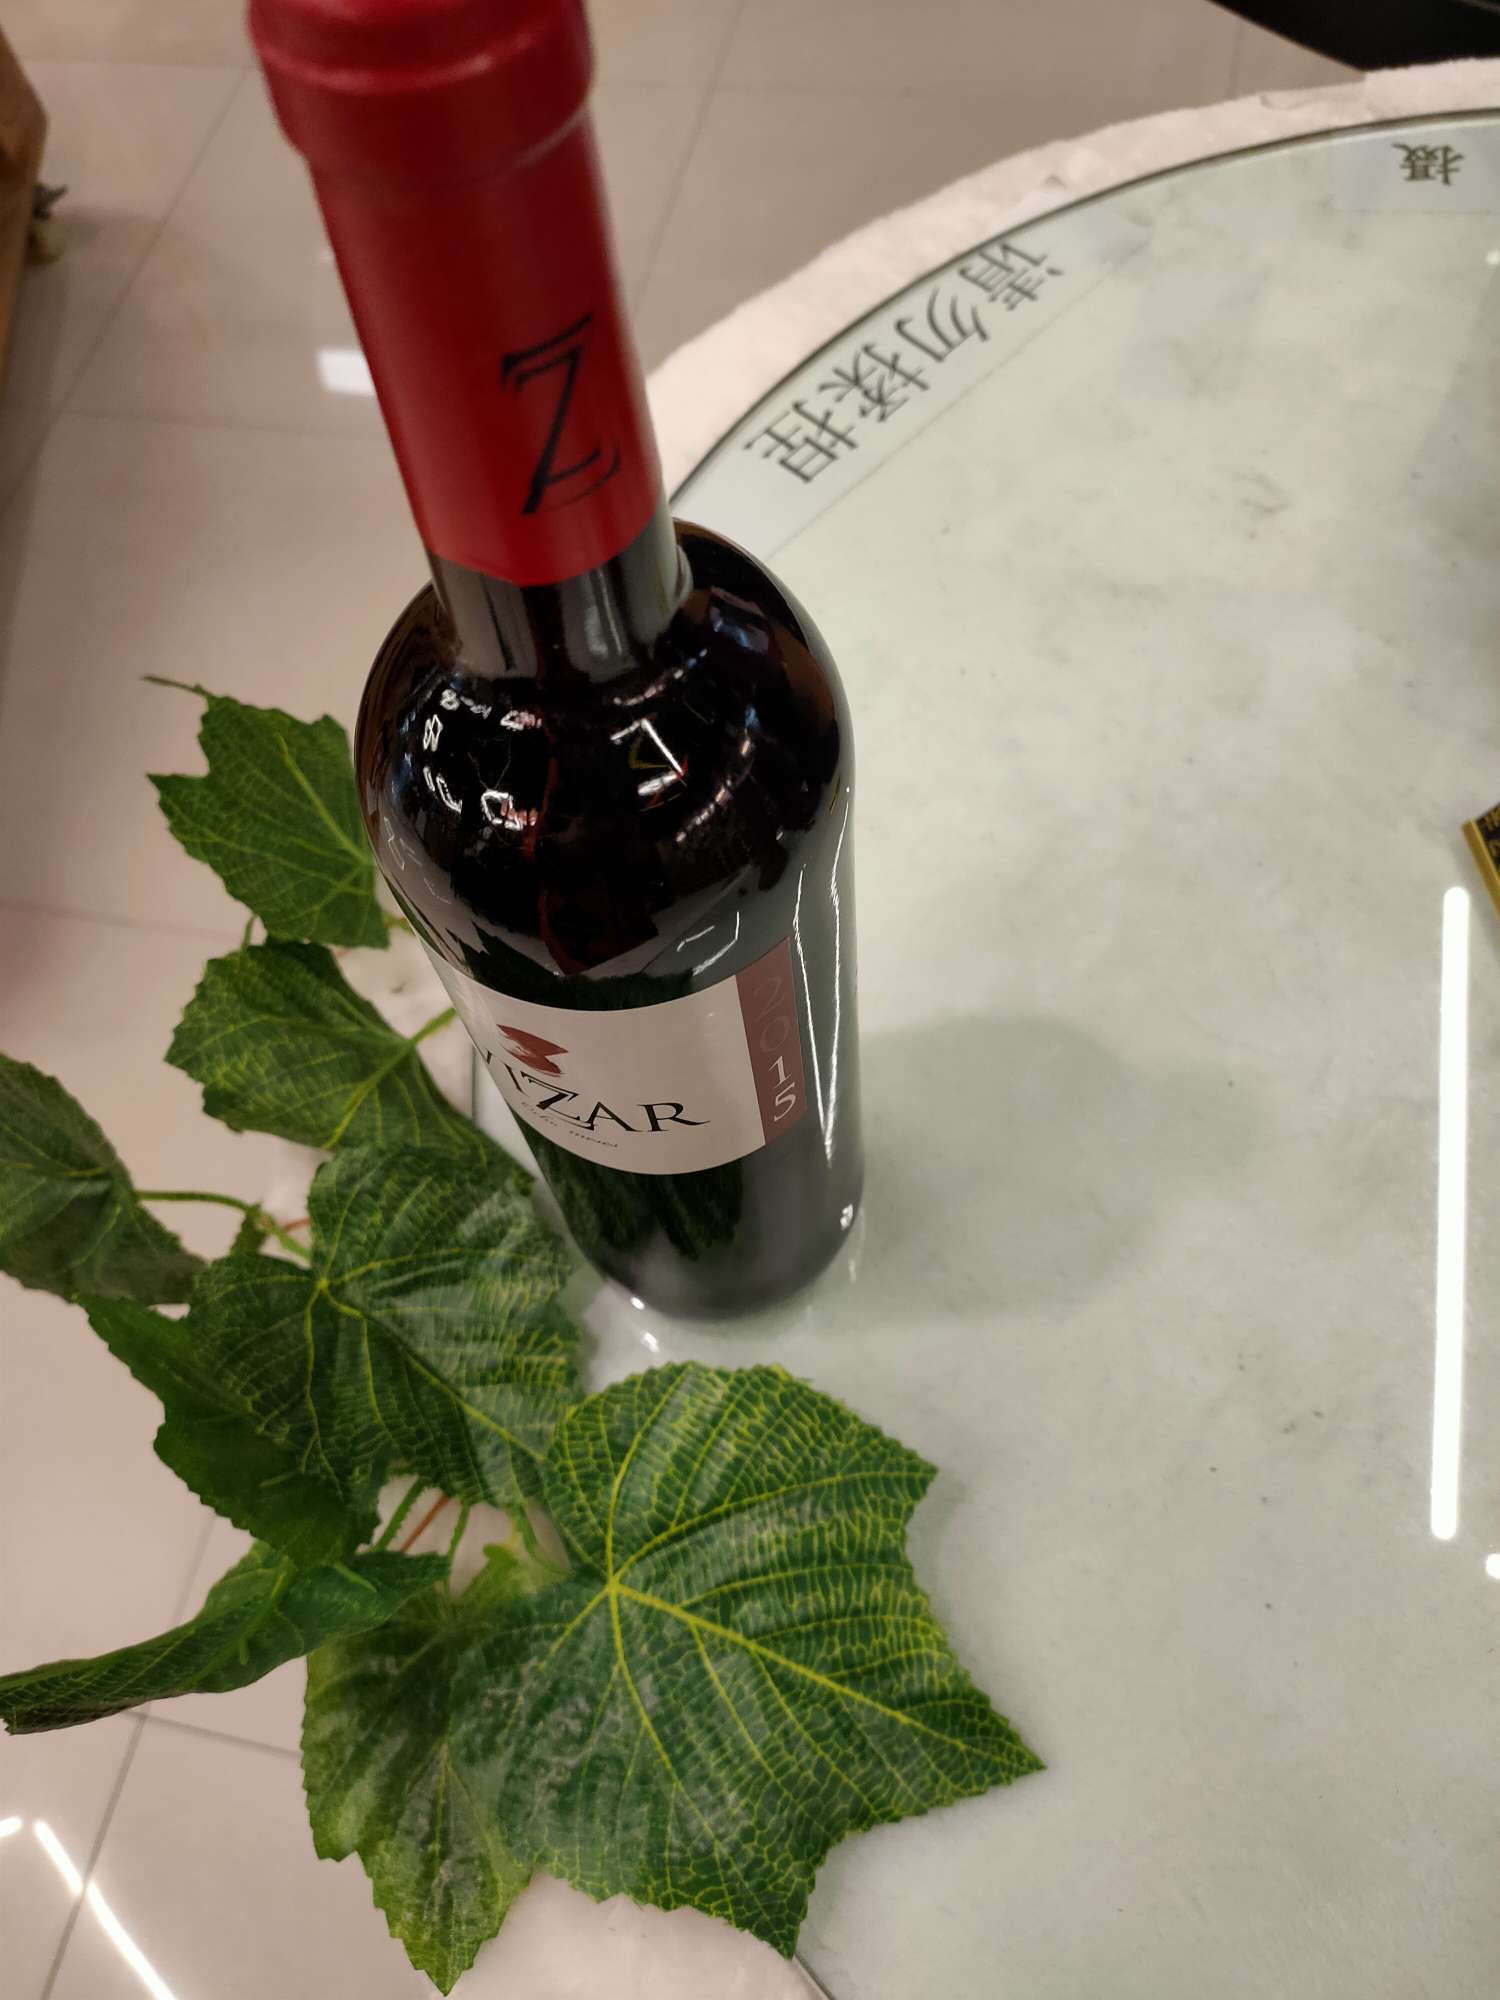 潍萨尔系列
五个月享受干红
2015年份酒产品图